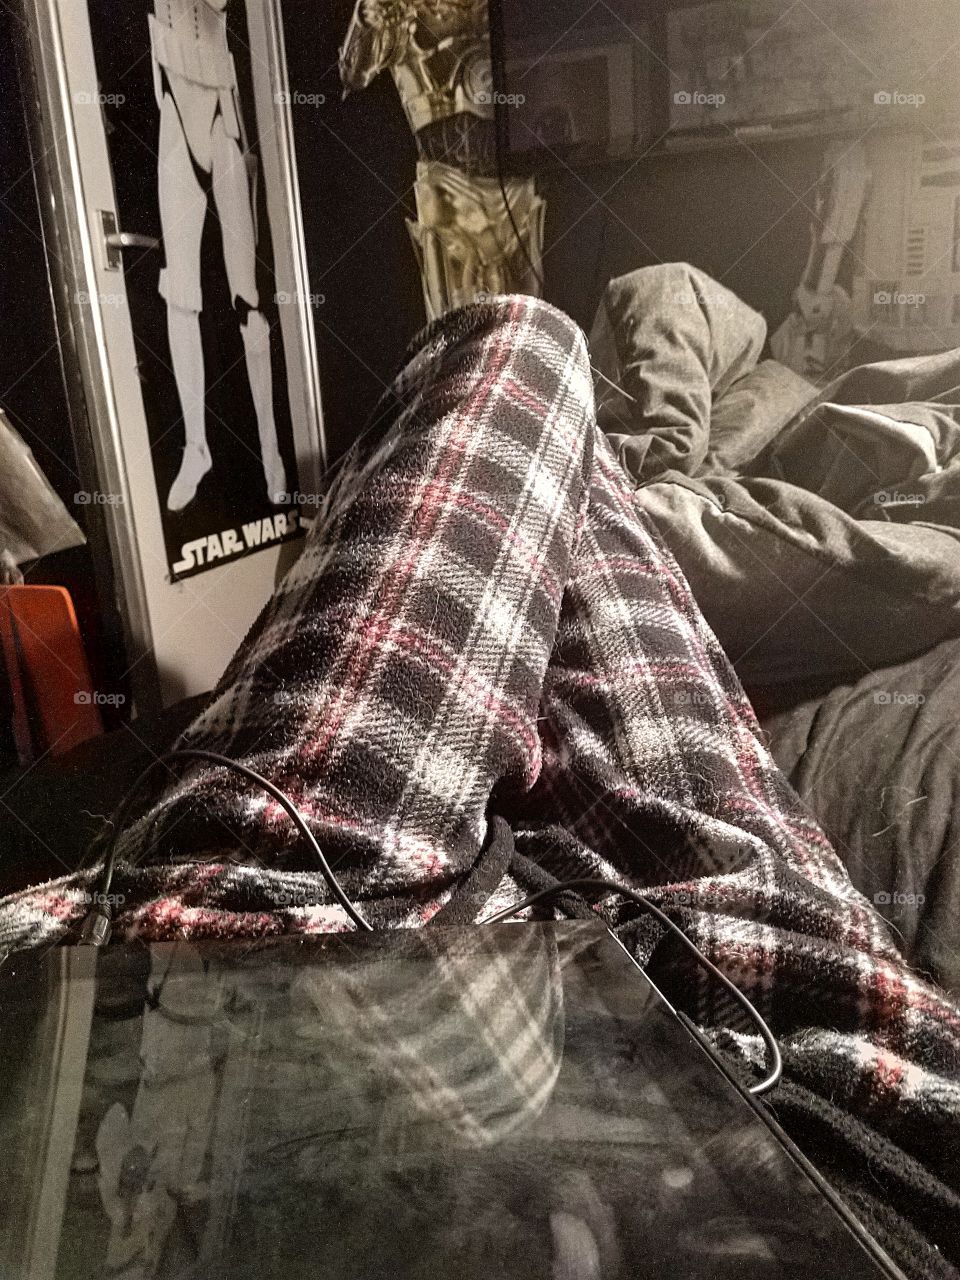 my sexy legs 😝